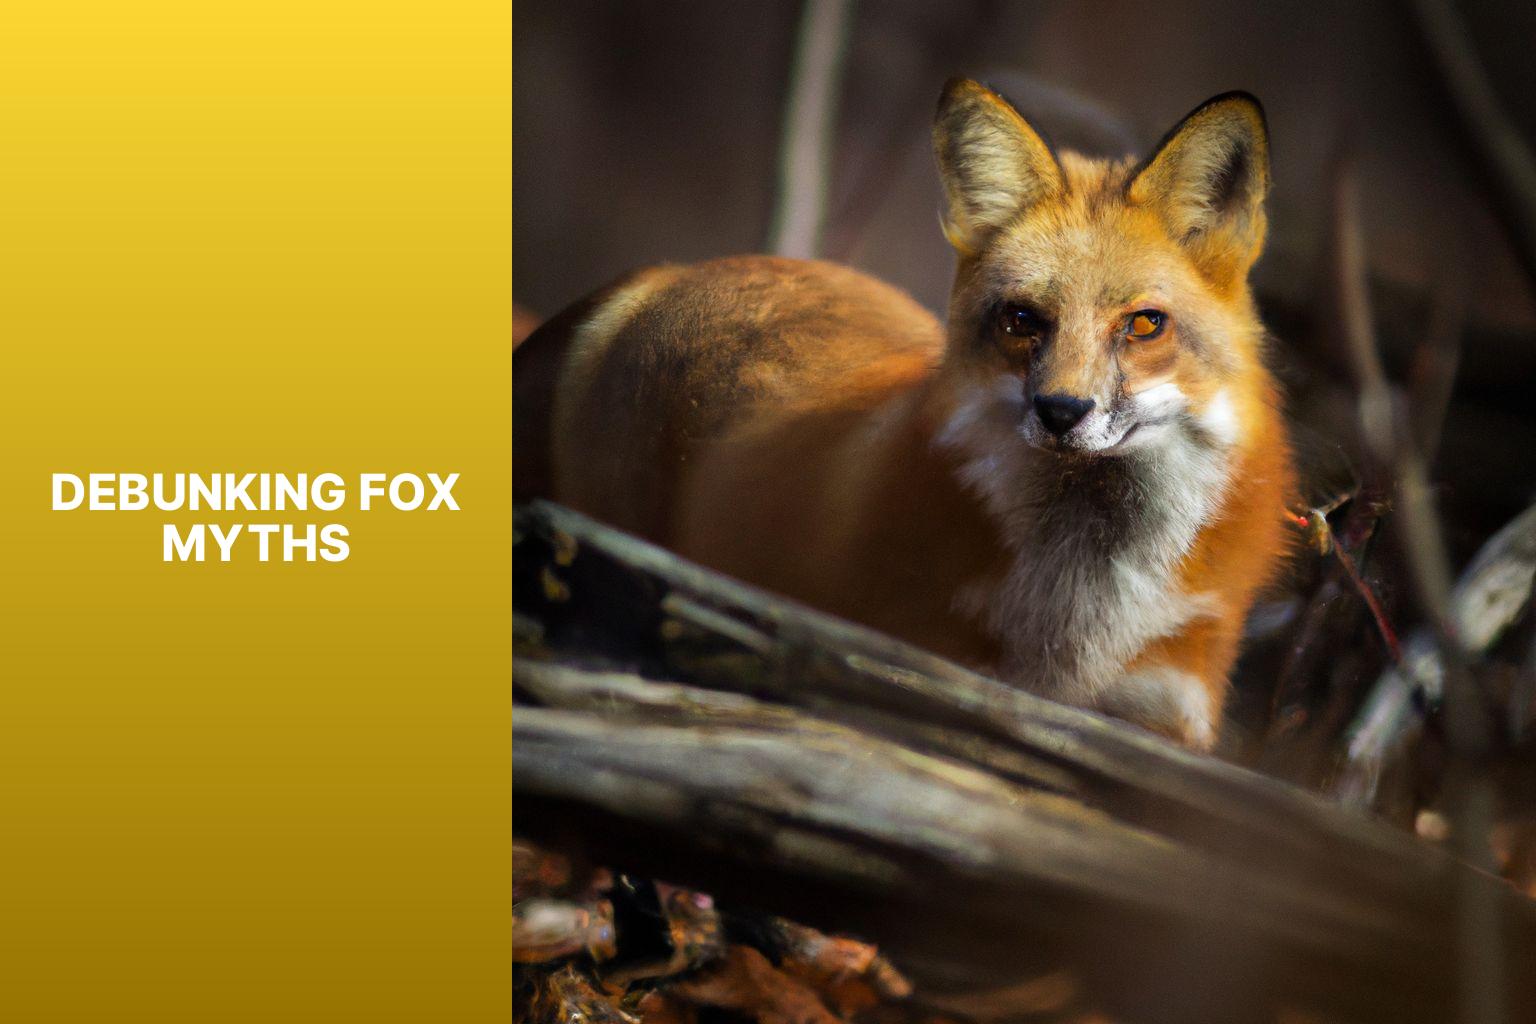 Debunking Fox Myths - Fox Myths in Animal Totems 